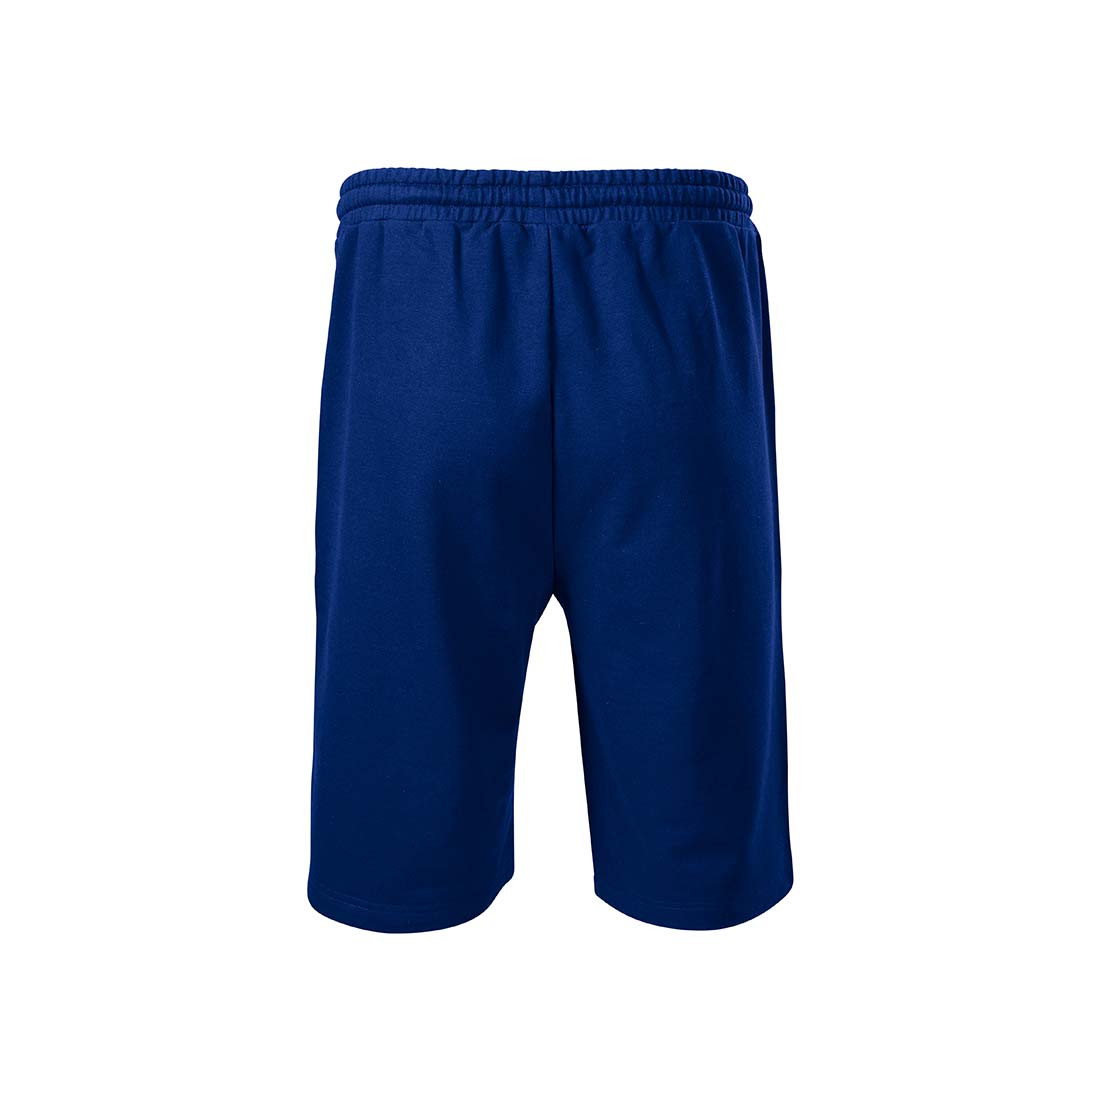 Pantalones cortos deportivos para hombres - Ropa de protección